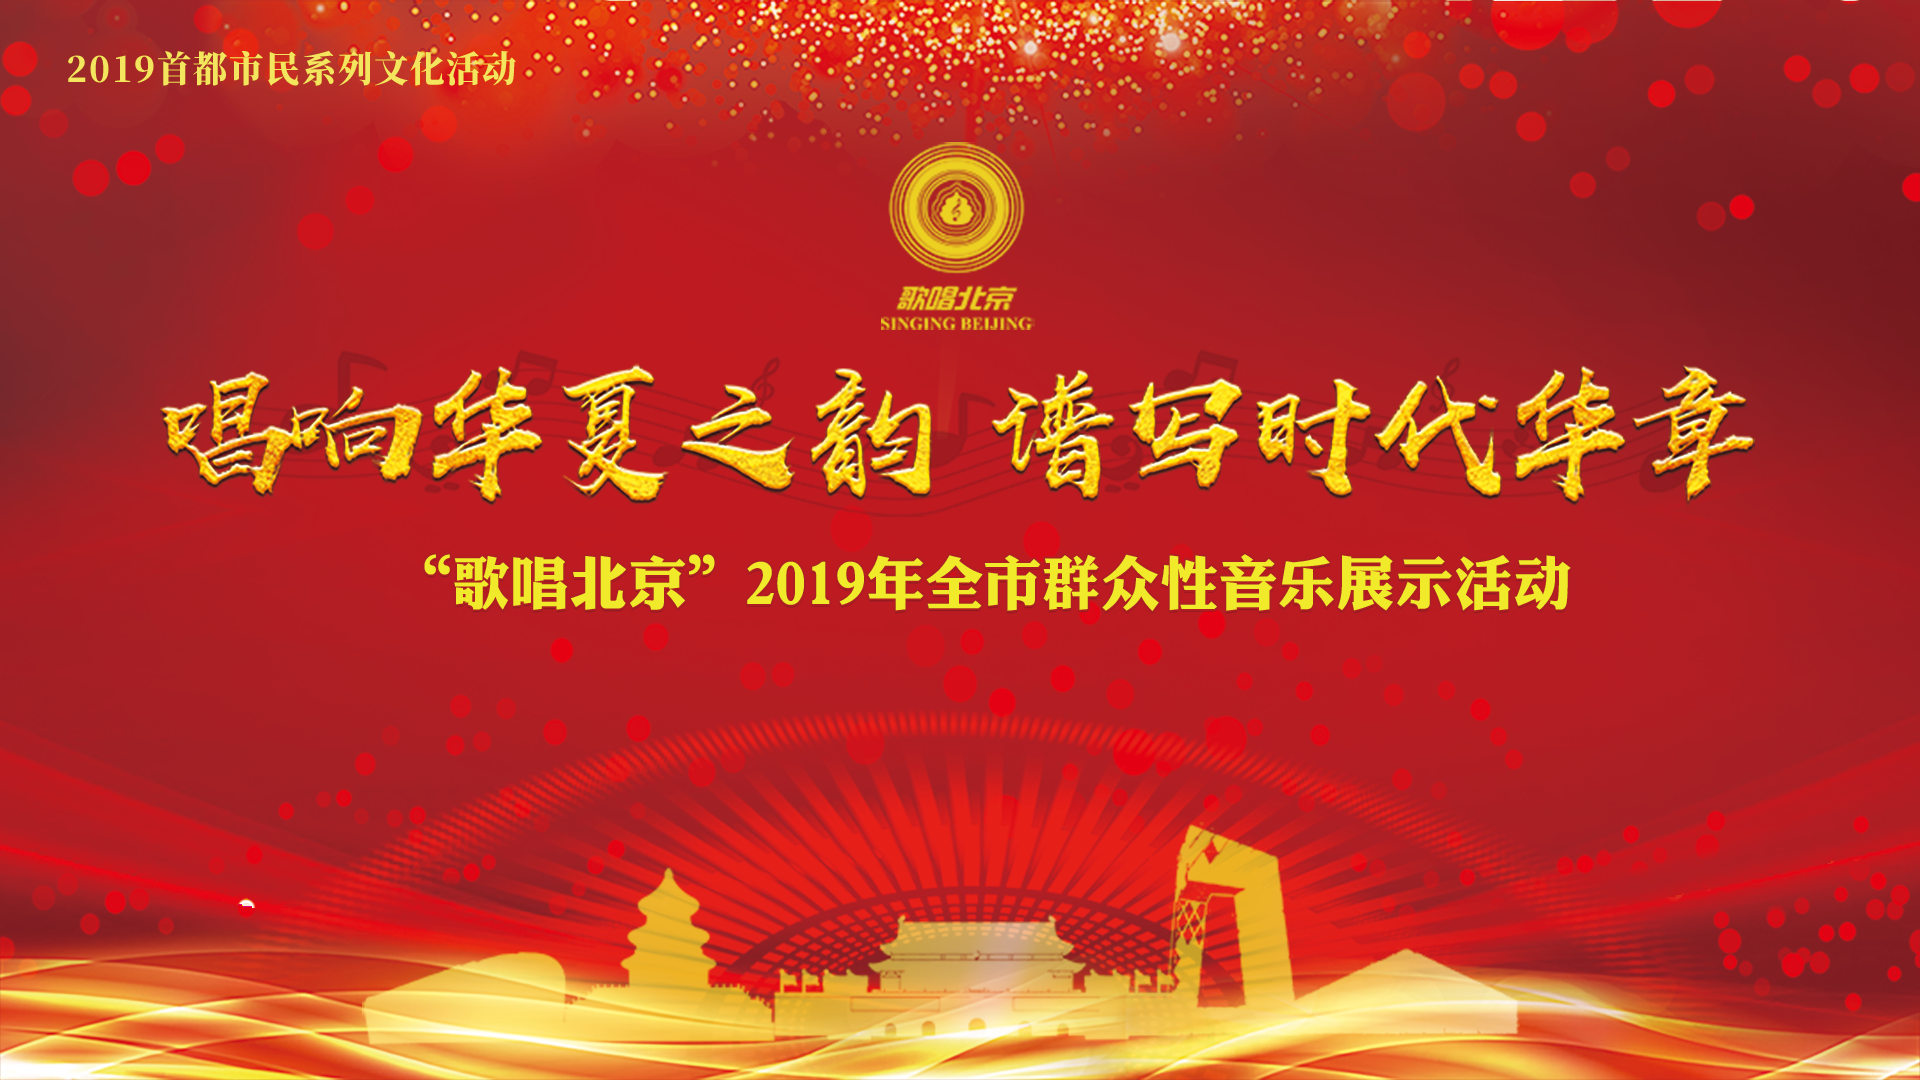 2019首都市民系列文化活动——歌唱北京颁奖音乐晚会